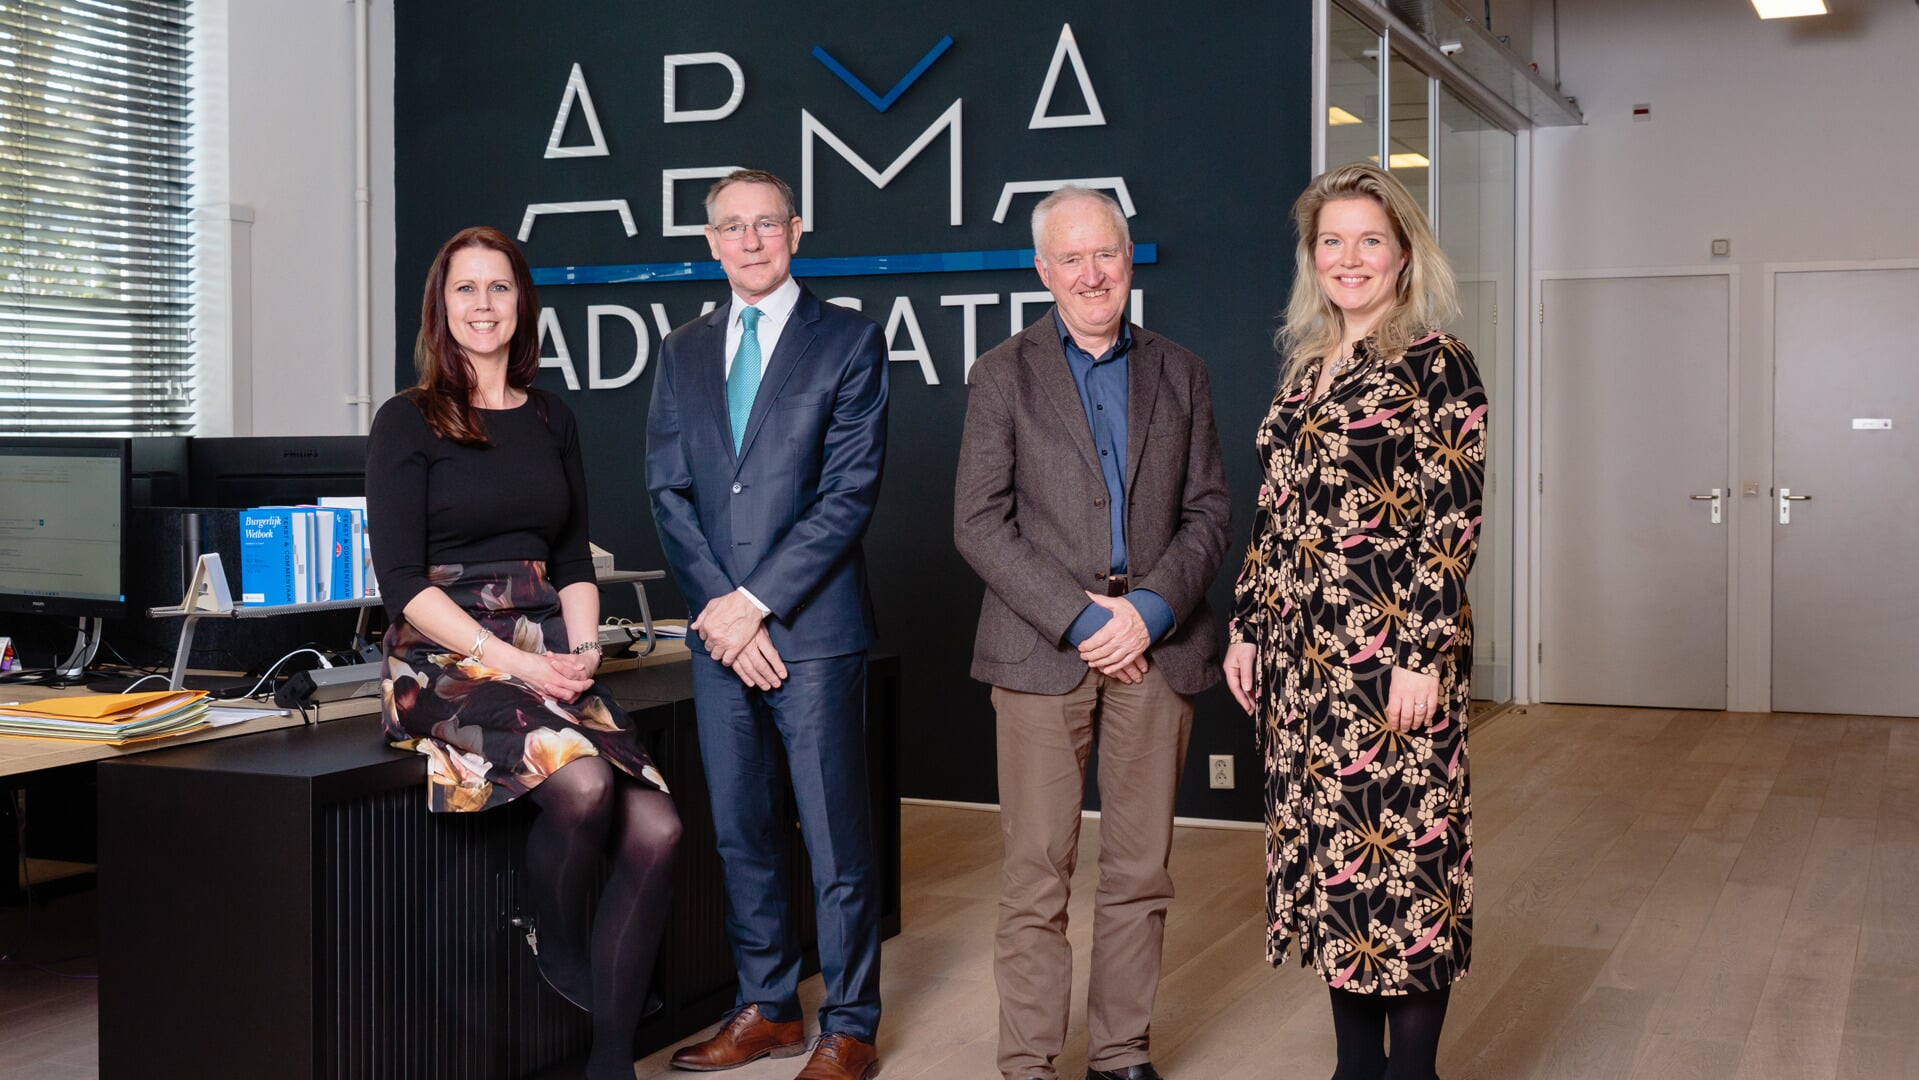 Het team van Abma Advocaten.